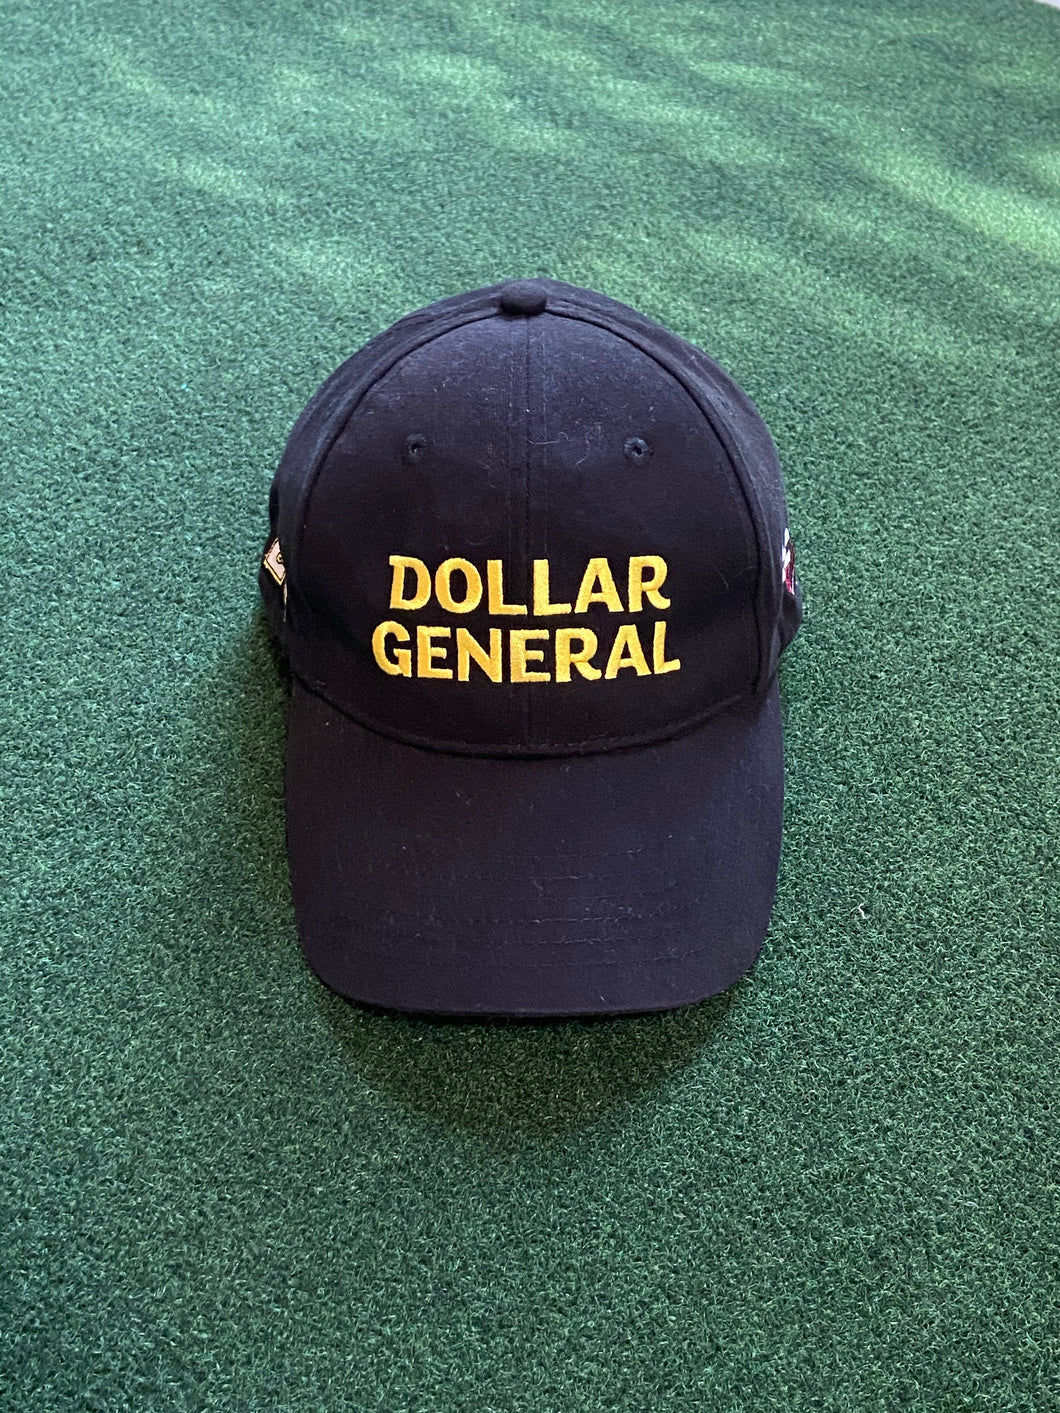 Vintage “NASCAR Matt Kenseth - Dollar General” Hat